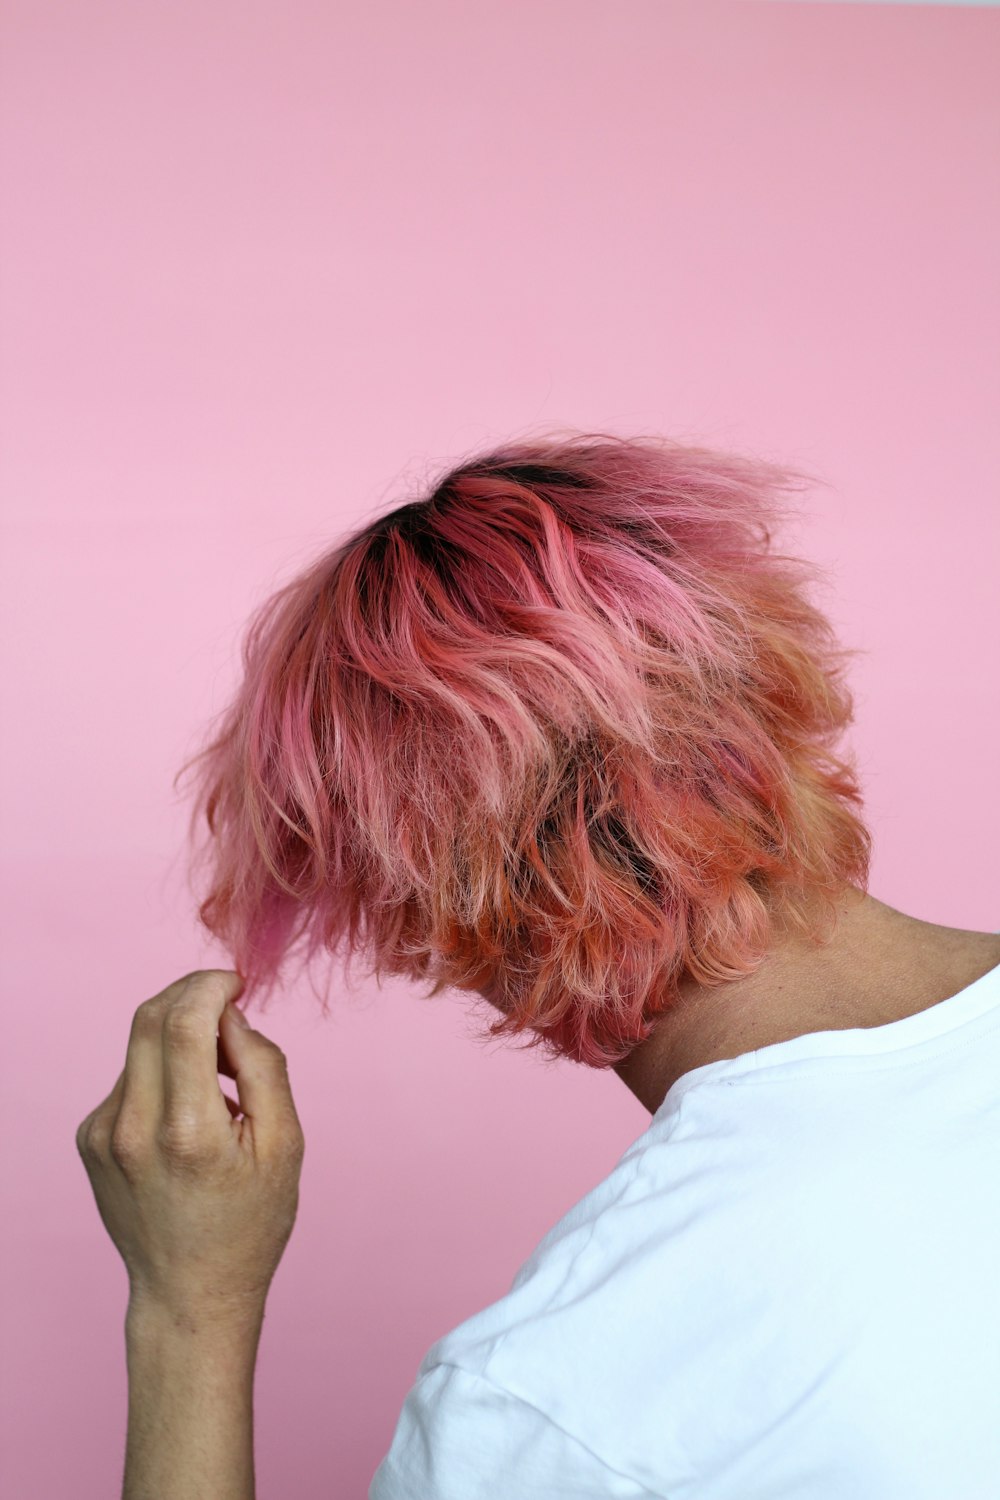 pessoa no cabelo branco top touch com tintura rosa